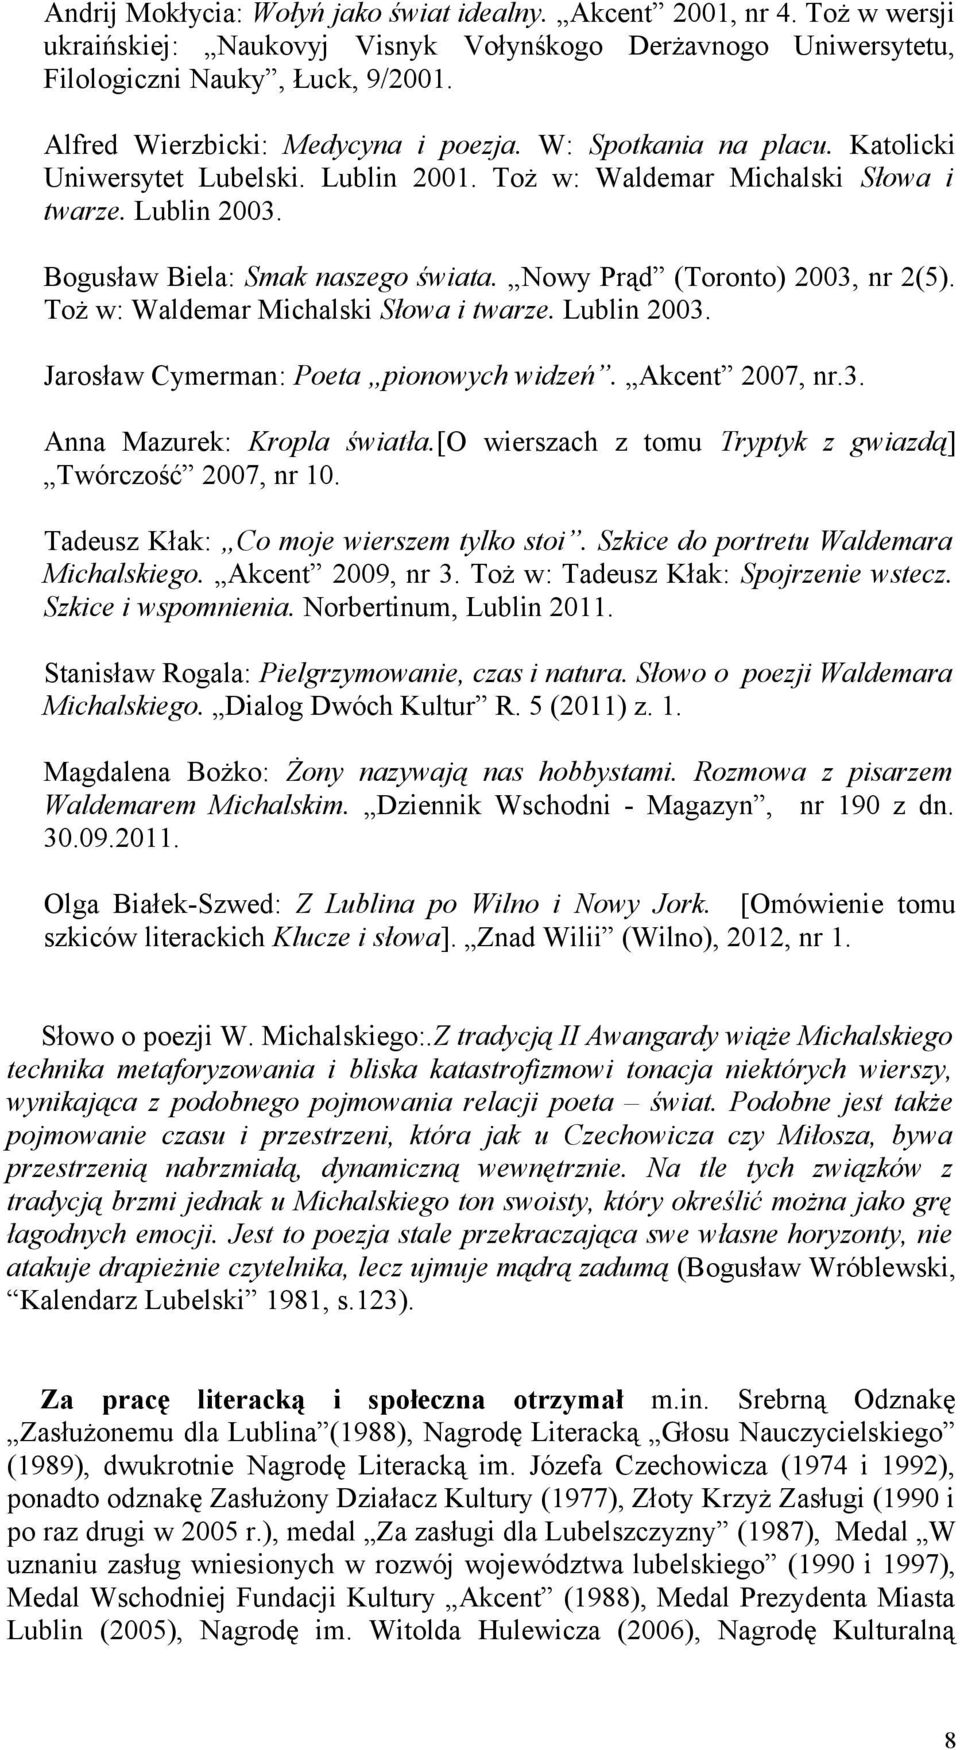 Nowy Prąd (Toronto) 2003, nr 2(5). Toż w: Waldemar Michalski Słowa i twarze. Lublin 2003. Jarosław Cymerman: Poeta pionowych widzeń. Akcent 2007, nr.3. Anna Mazurek: Kropla światła.